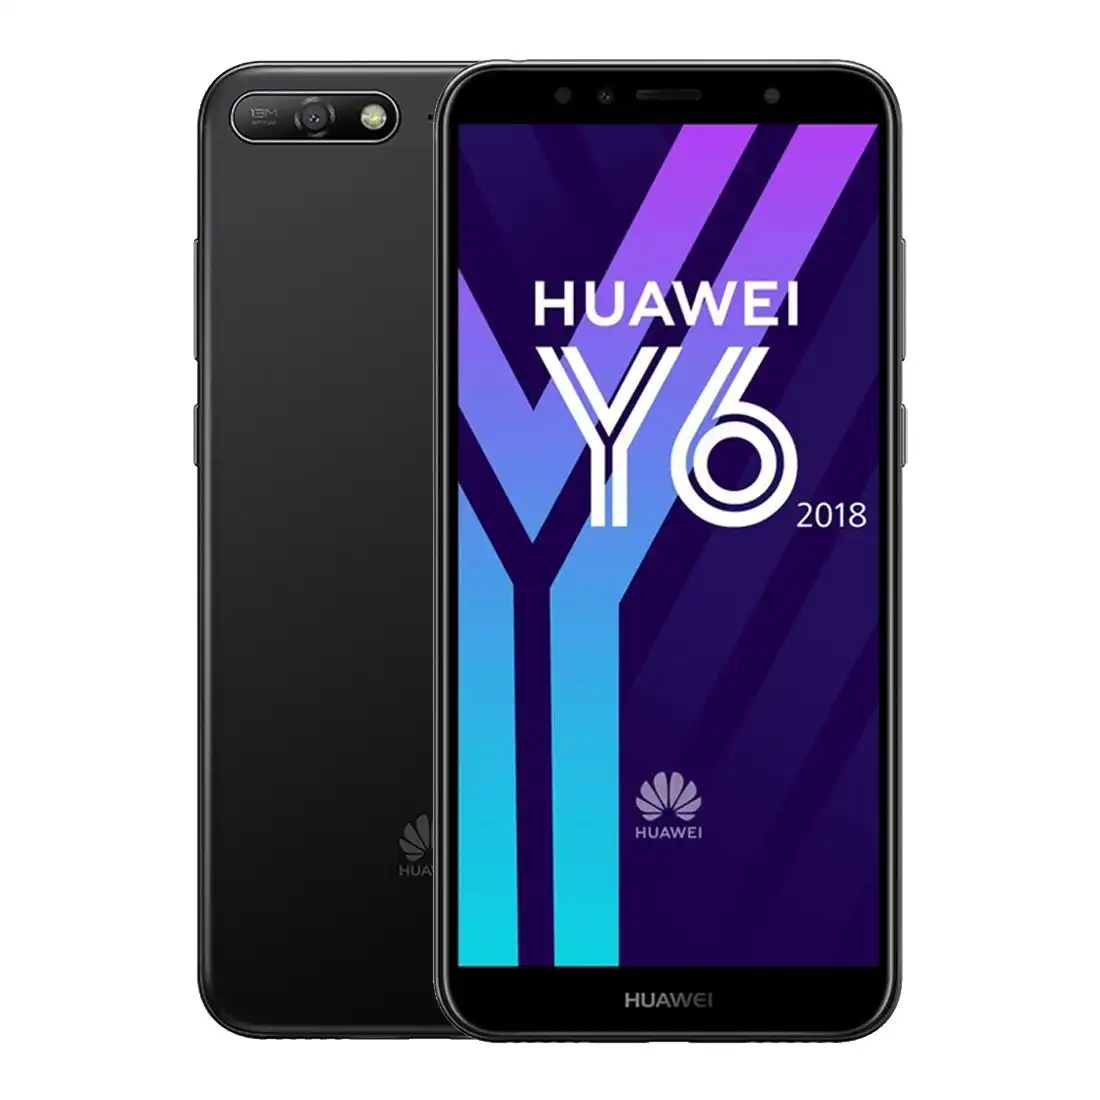 Huawei Y6 (16GB/2GB, Locked to Optus) - Black [Refurbished] - Excellent